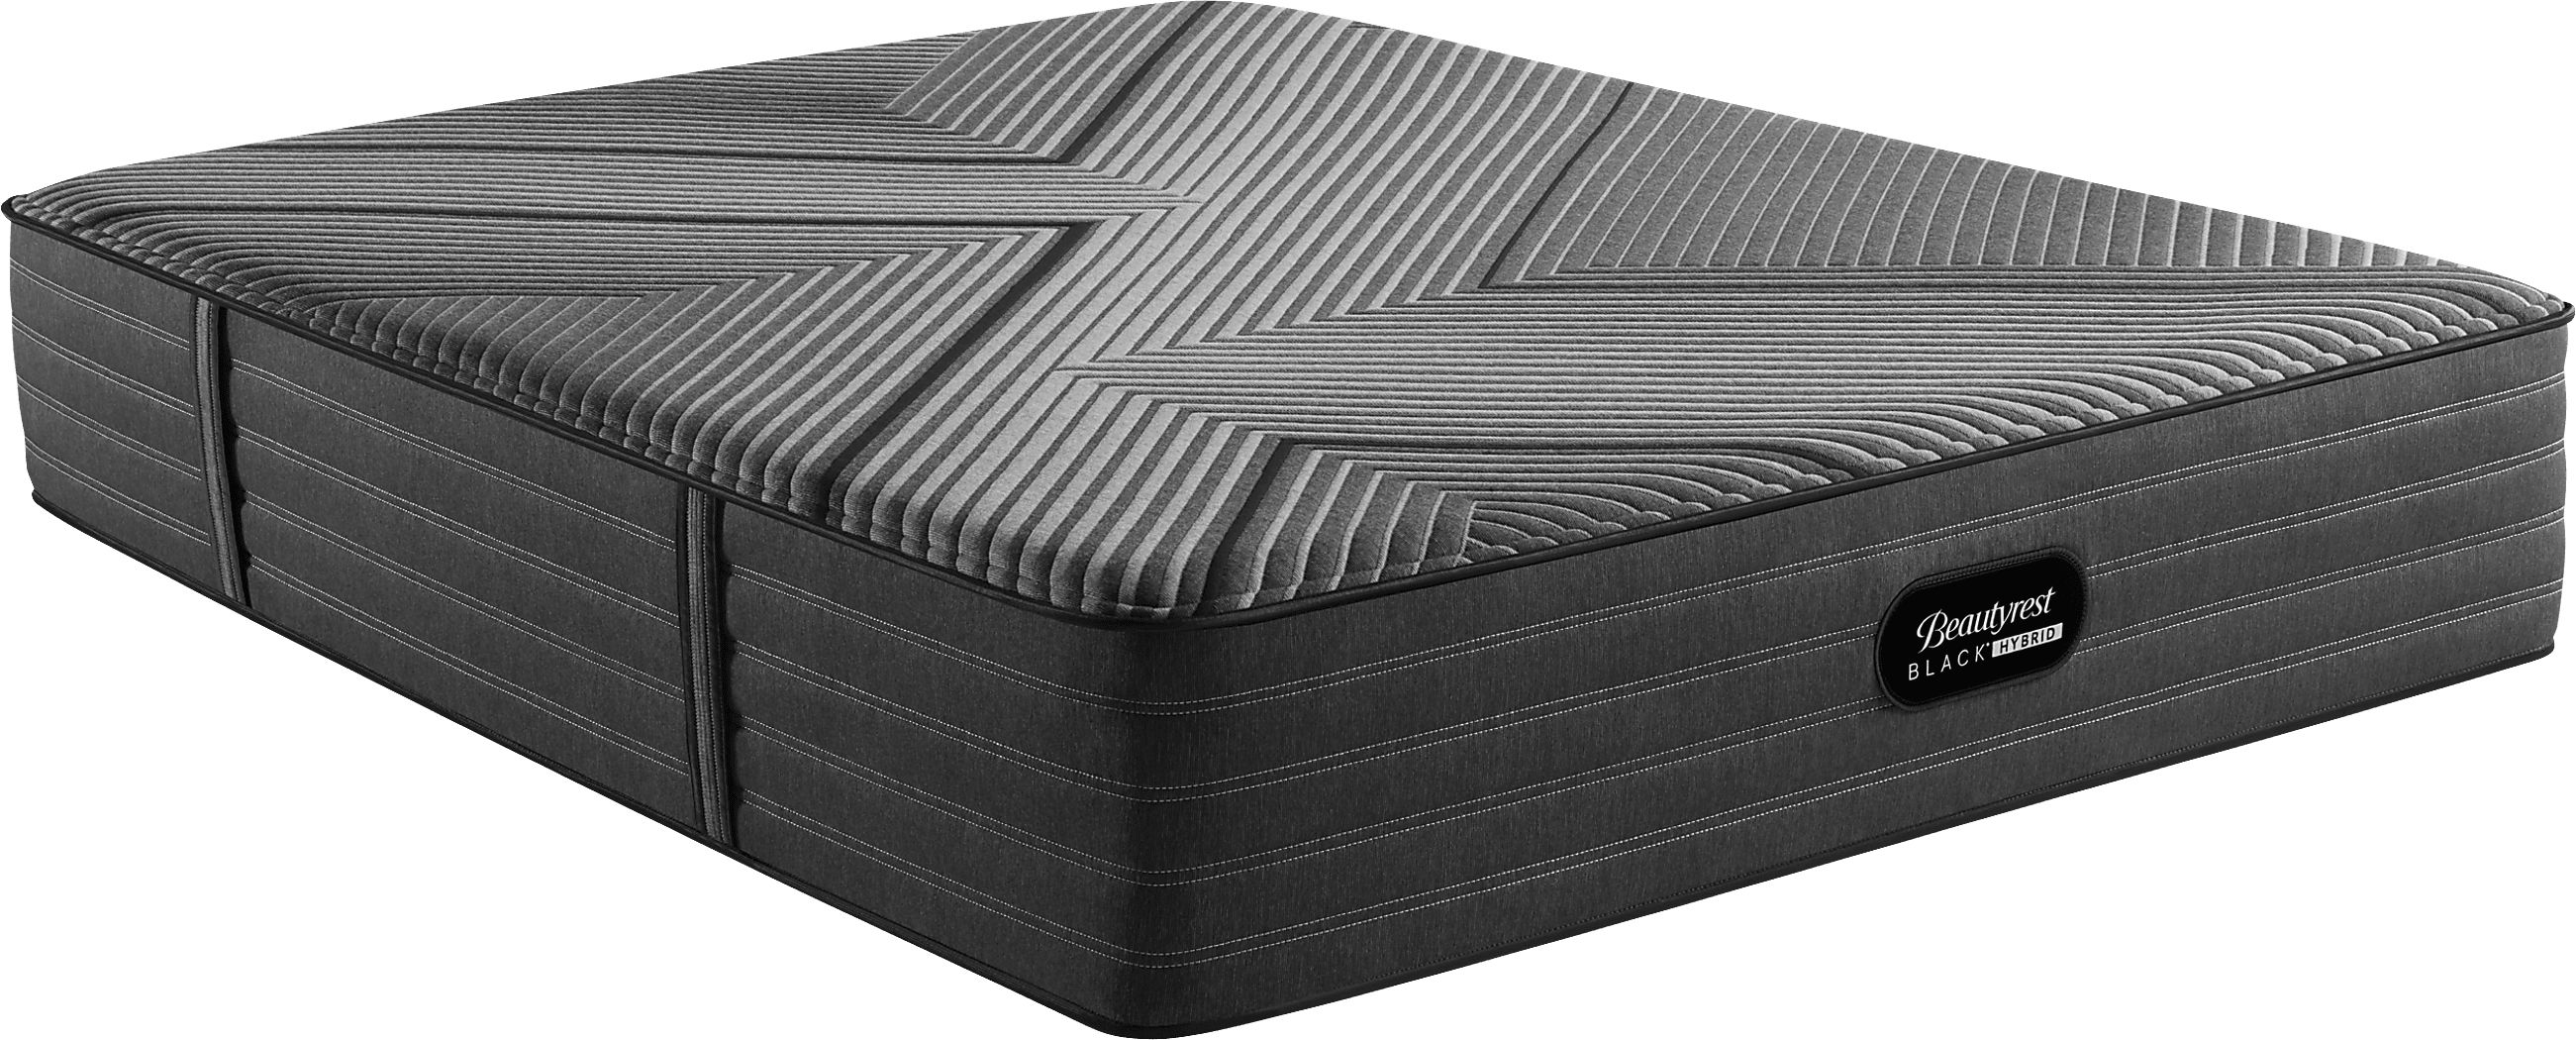 beautyrest tight top medium firm mattress reviews